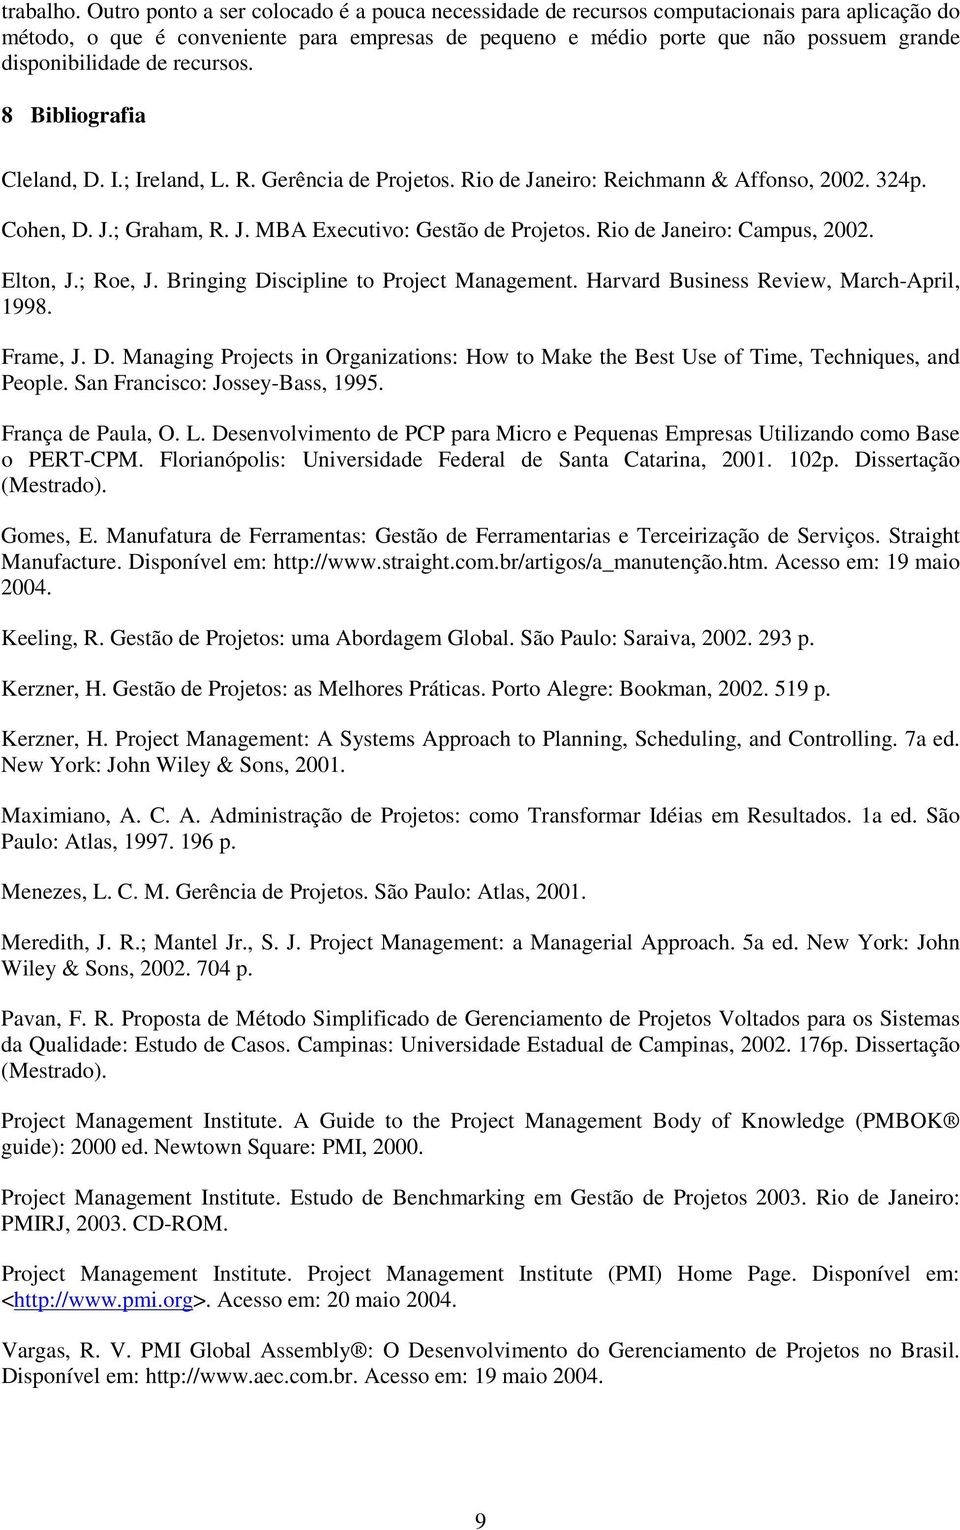 de recursos. 8 Bibliografia Cleland, D. I.; Ireland, L. R. Gerência de Projetos. Rio de Janeiro: Reichmann & Affonso, 2002. 324p. Cohen, D. J.; Graham, R. J. MBA Executivo: Gestão de Projetos.